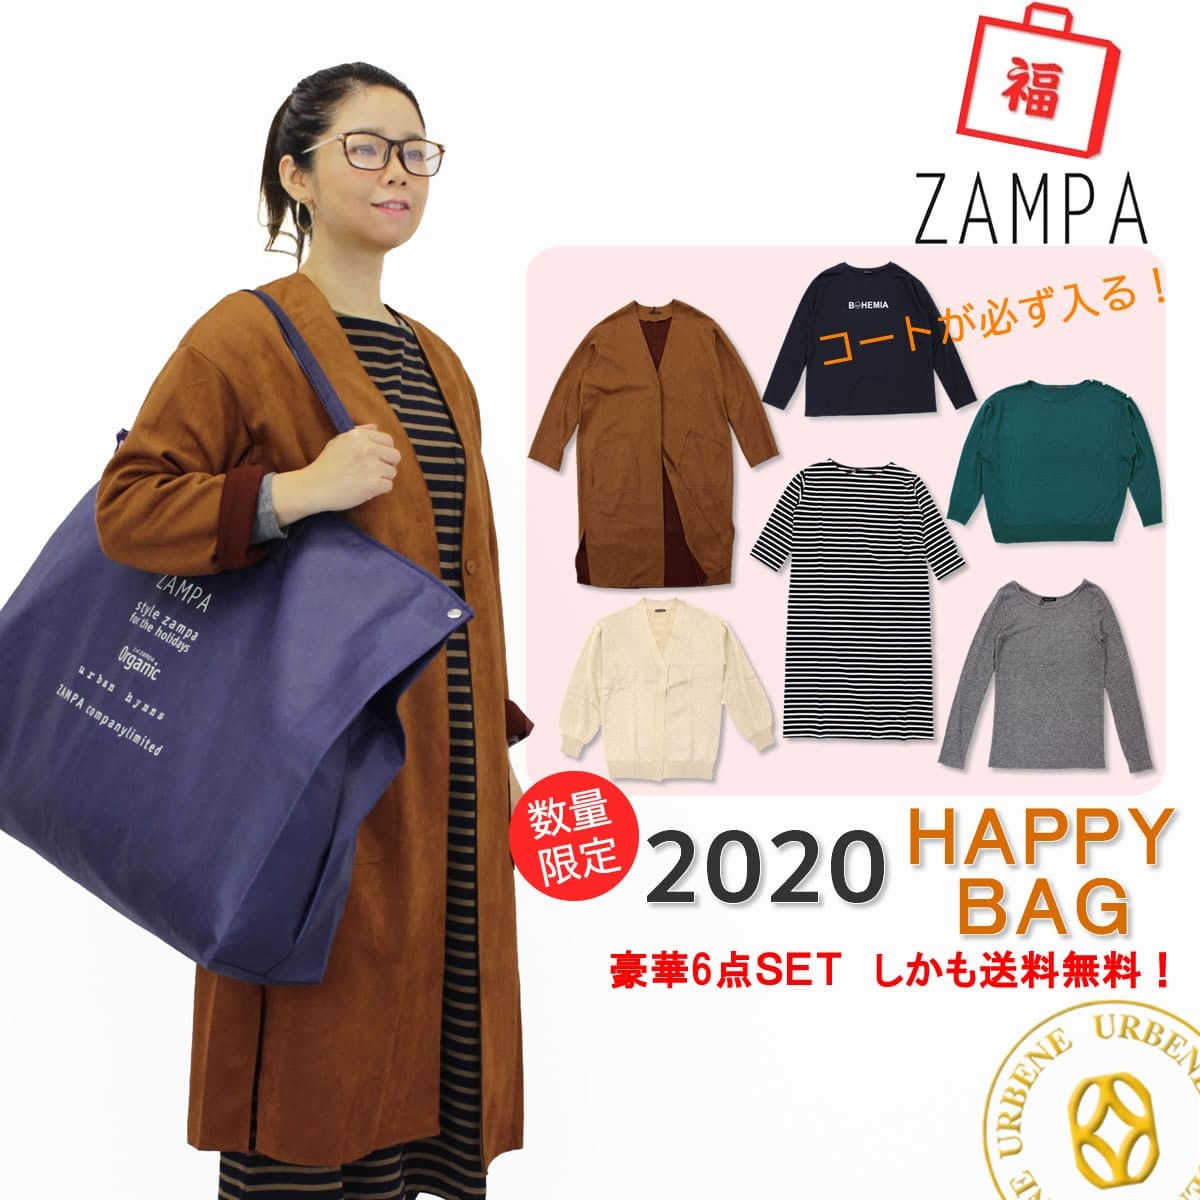 2020年福袋 Zampa レディース ザンパ 初売り福袋 コートが入る 6点